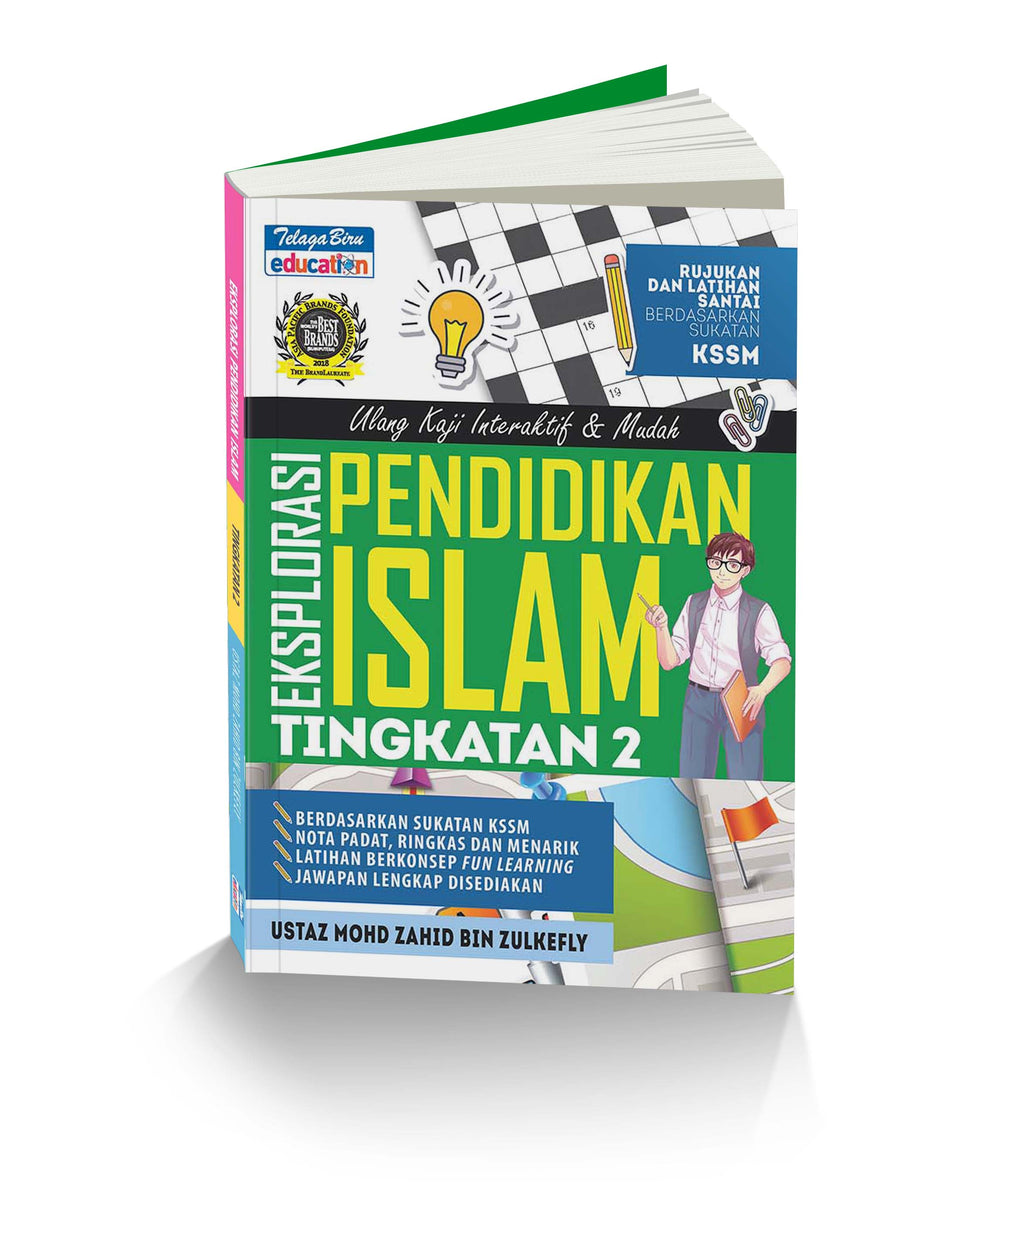 Teks 2 pendidikan tingkatan buku islam jawapan Buku Teks